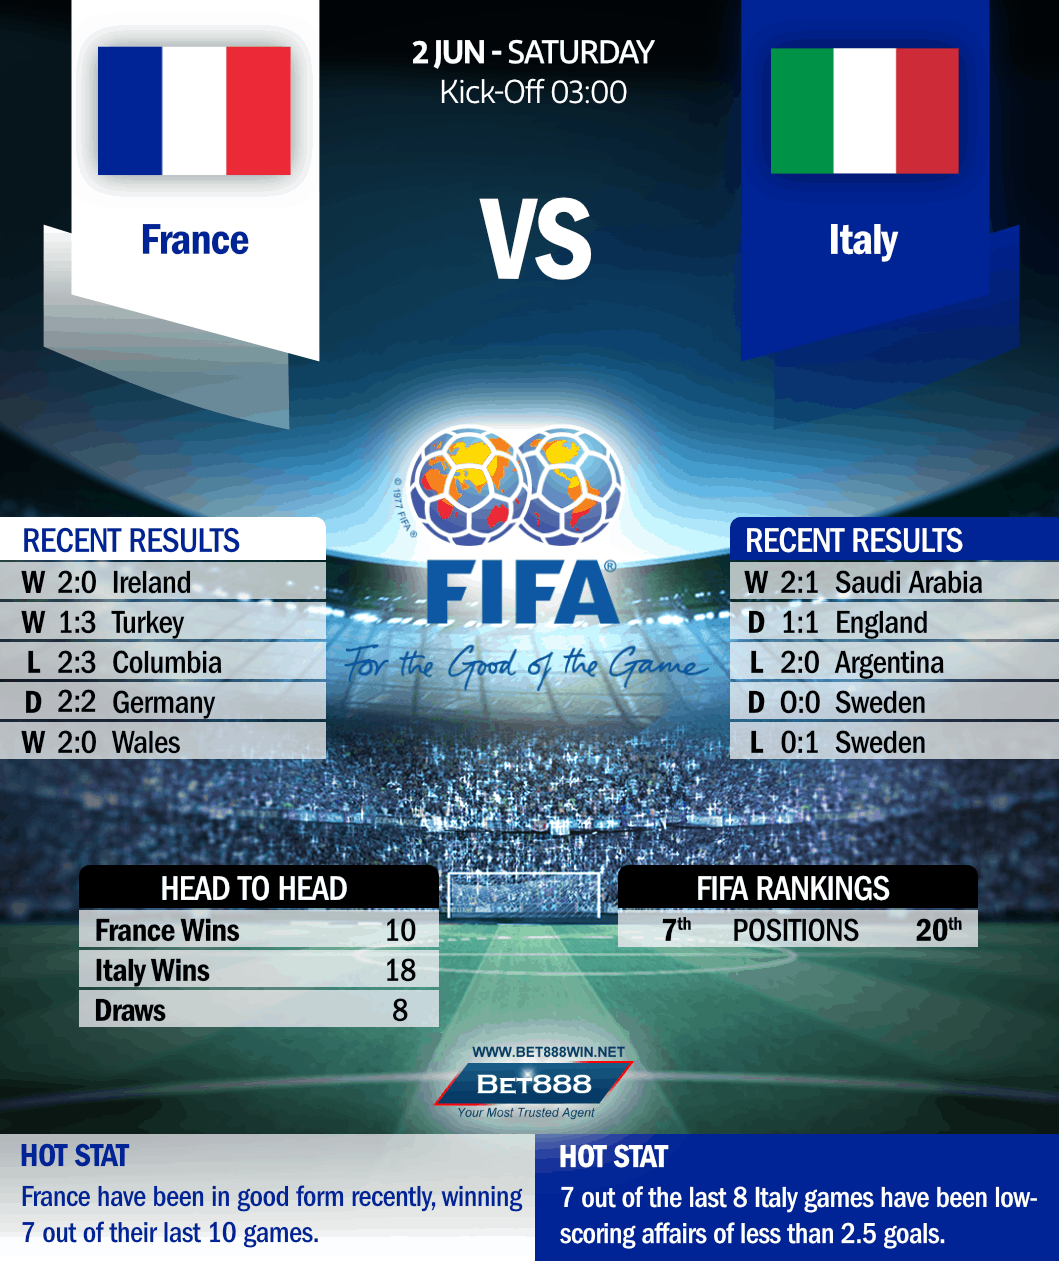 France vs Italy 02/06/18